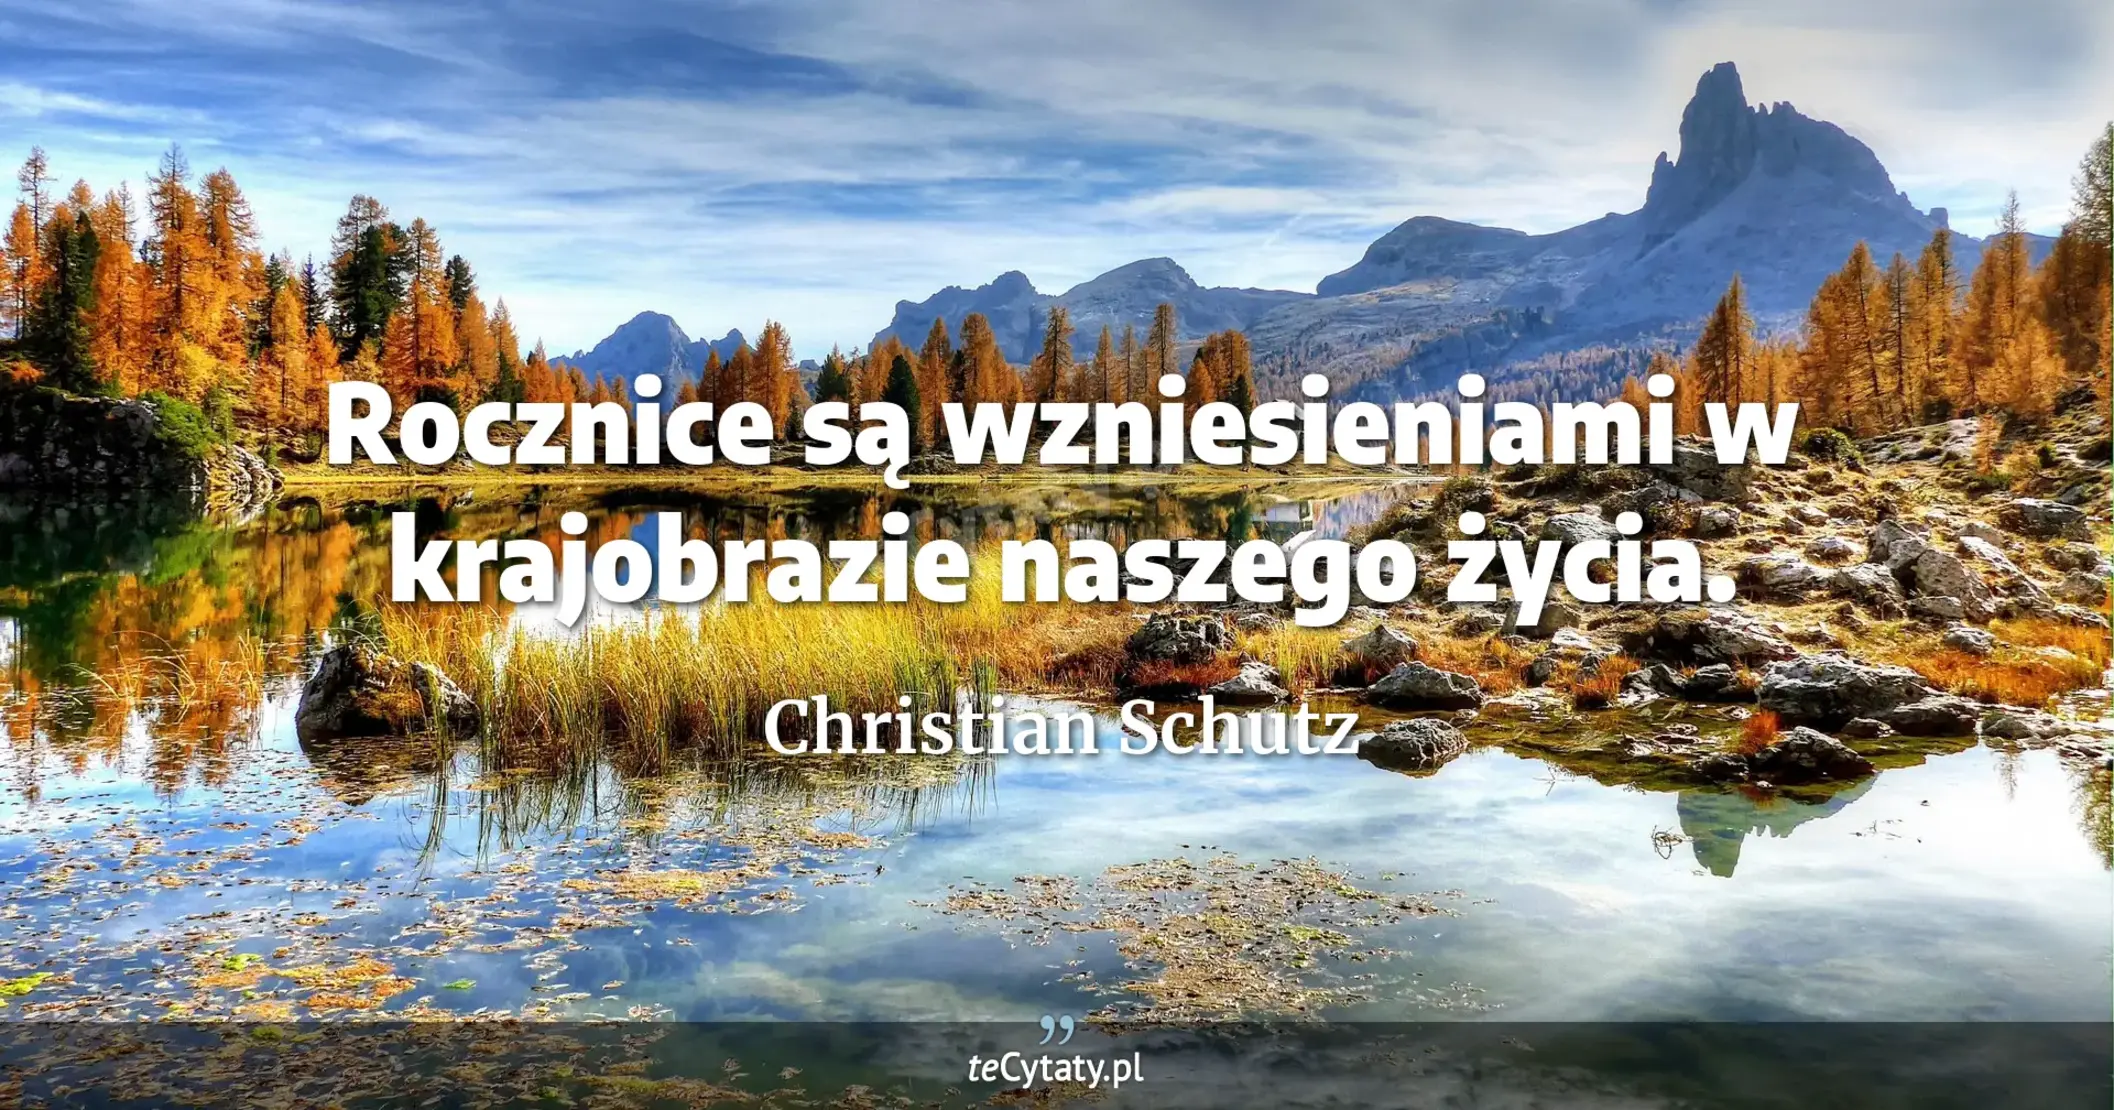 Rocznice są wzniesieniami w krajobrazie naszego życia. - Christian Schutz